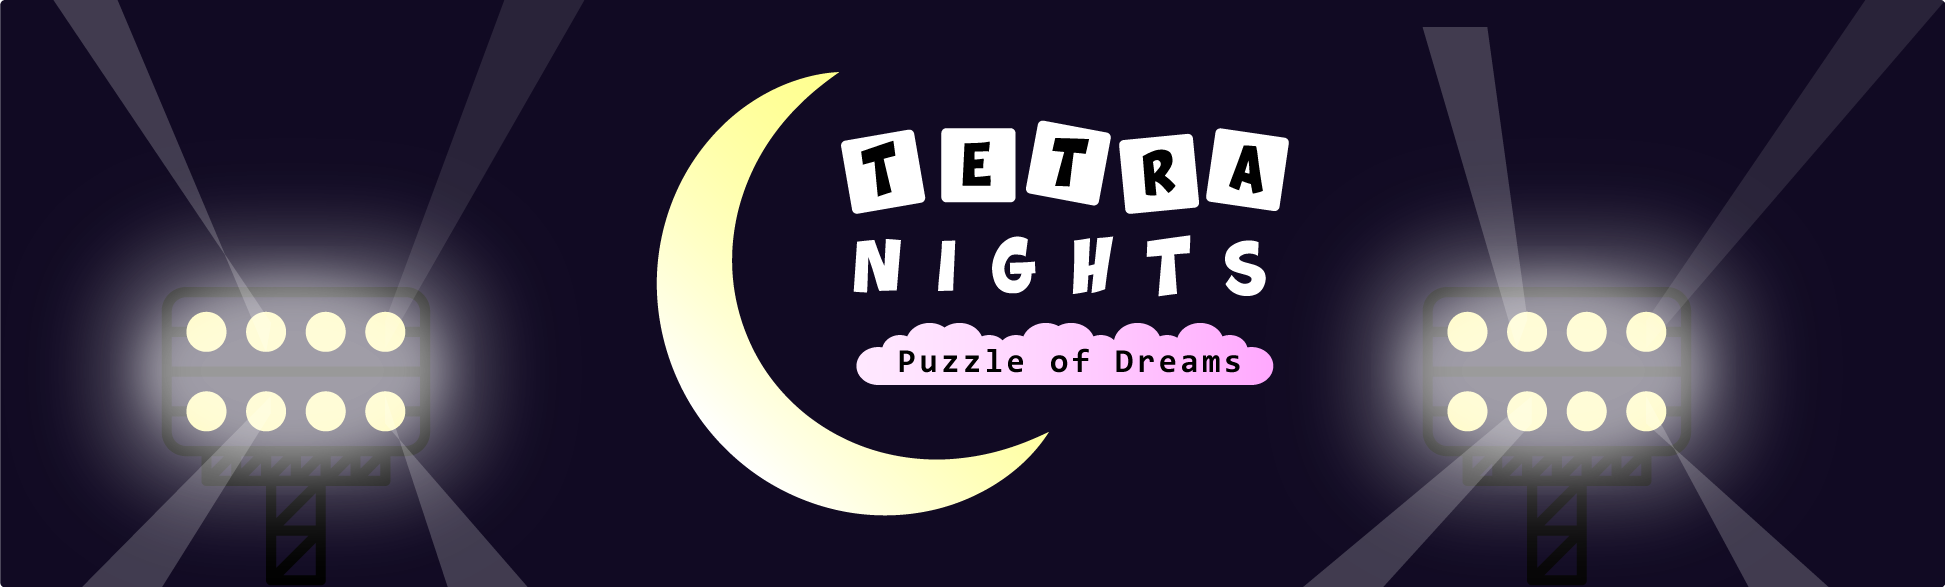 Tetra Nights - Puzzle of Dreams (Alpha)